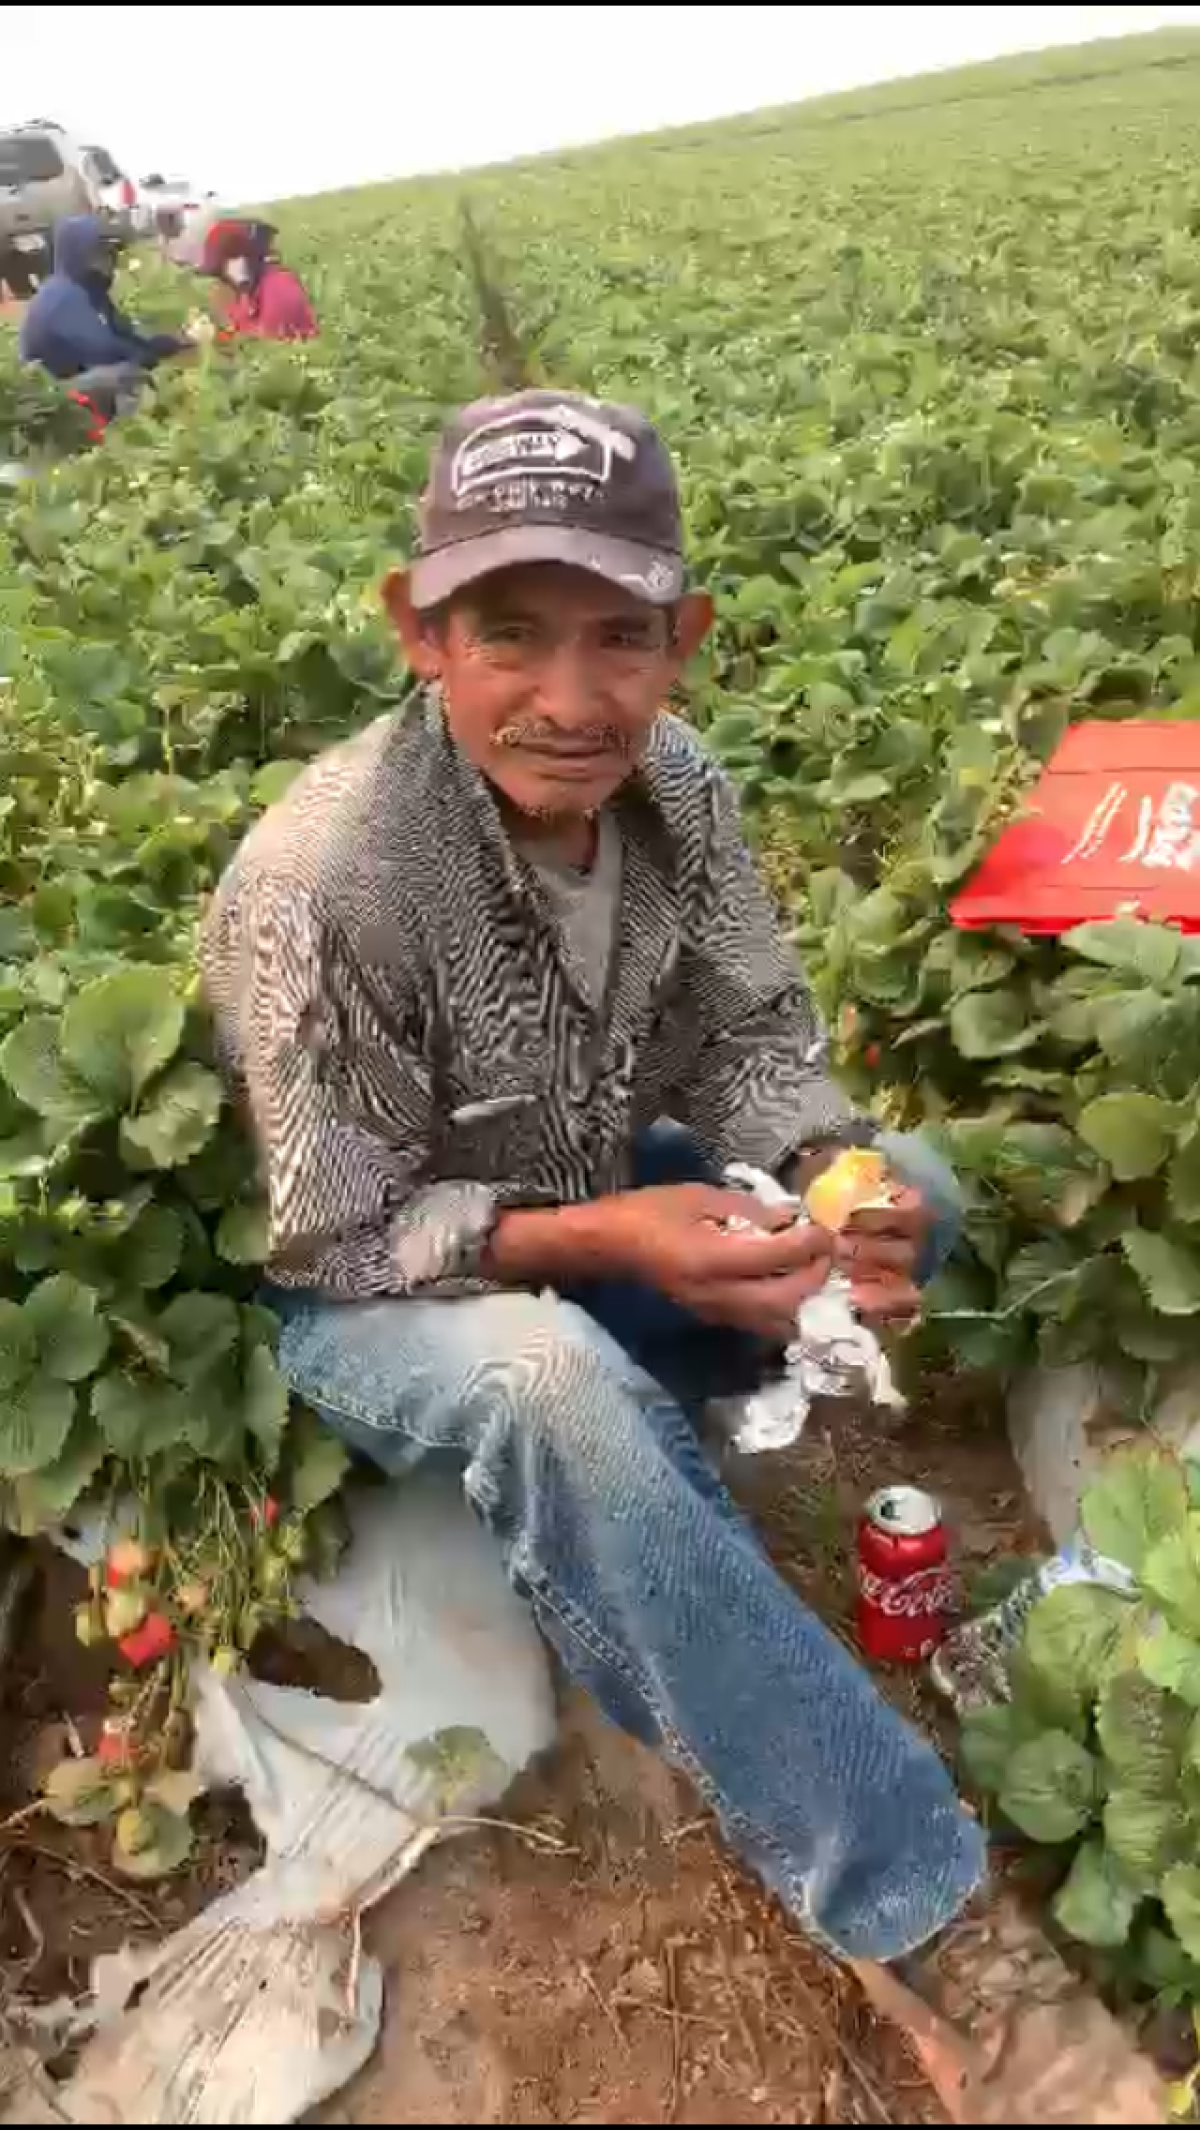 Un trabajador comiendo en el campo durante un descanso.